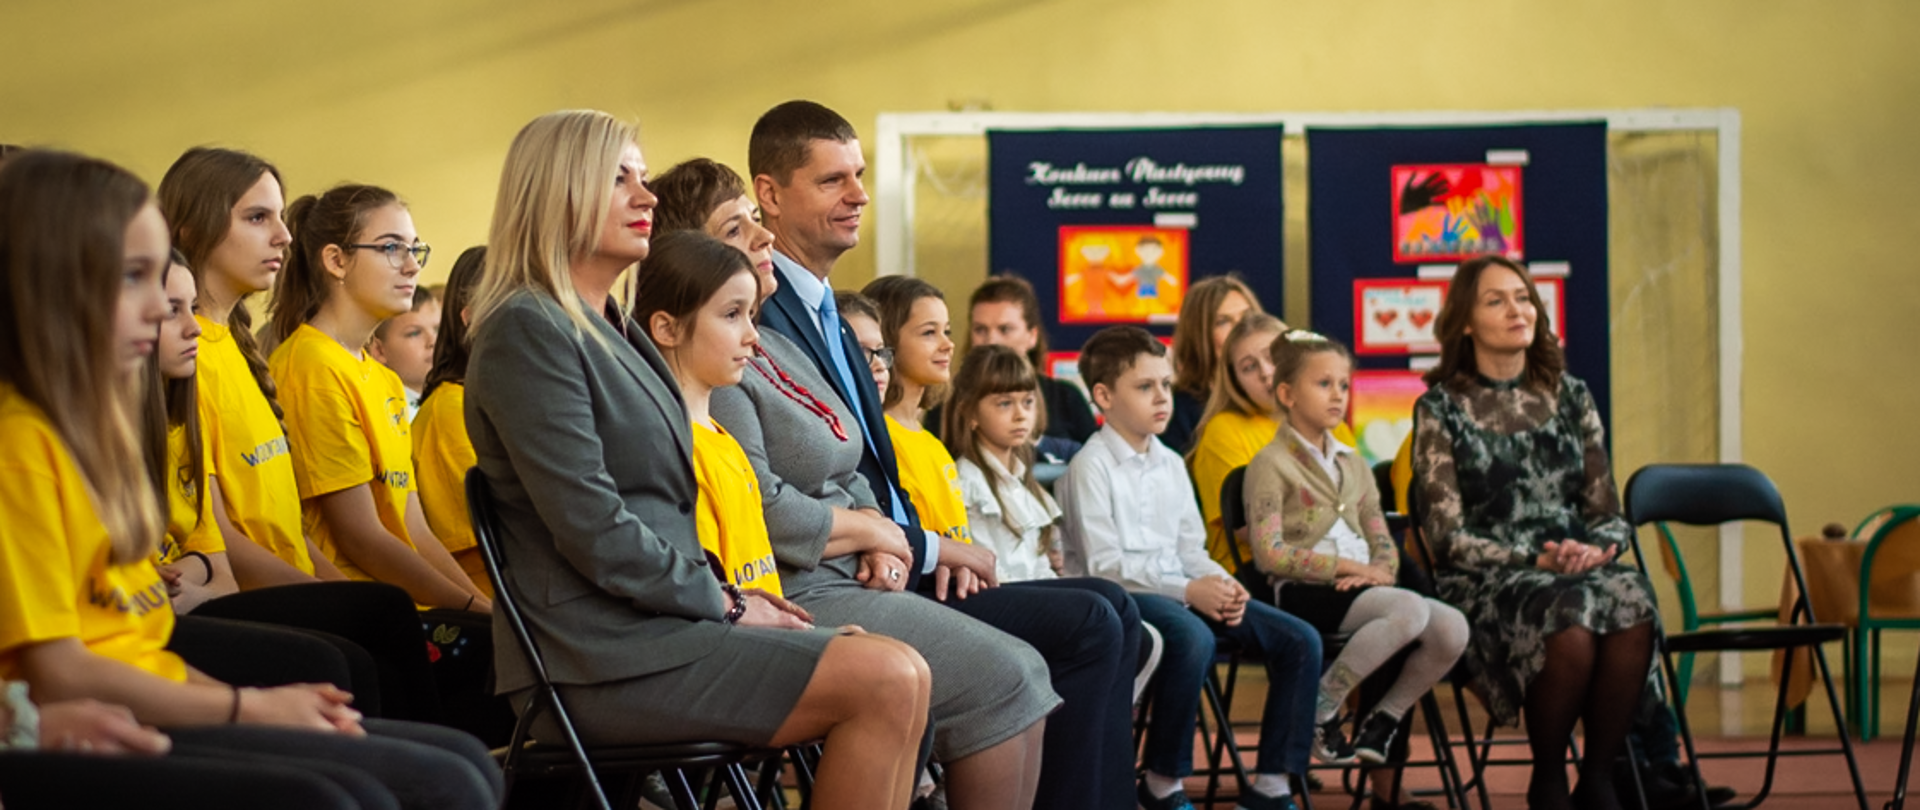 Minister Edukacji Narodowej i kurator podlaski razem z dziećmi podczas obchodów Dnia Wolontariusza